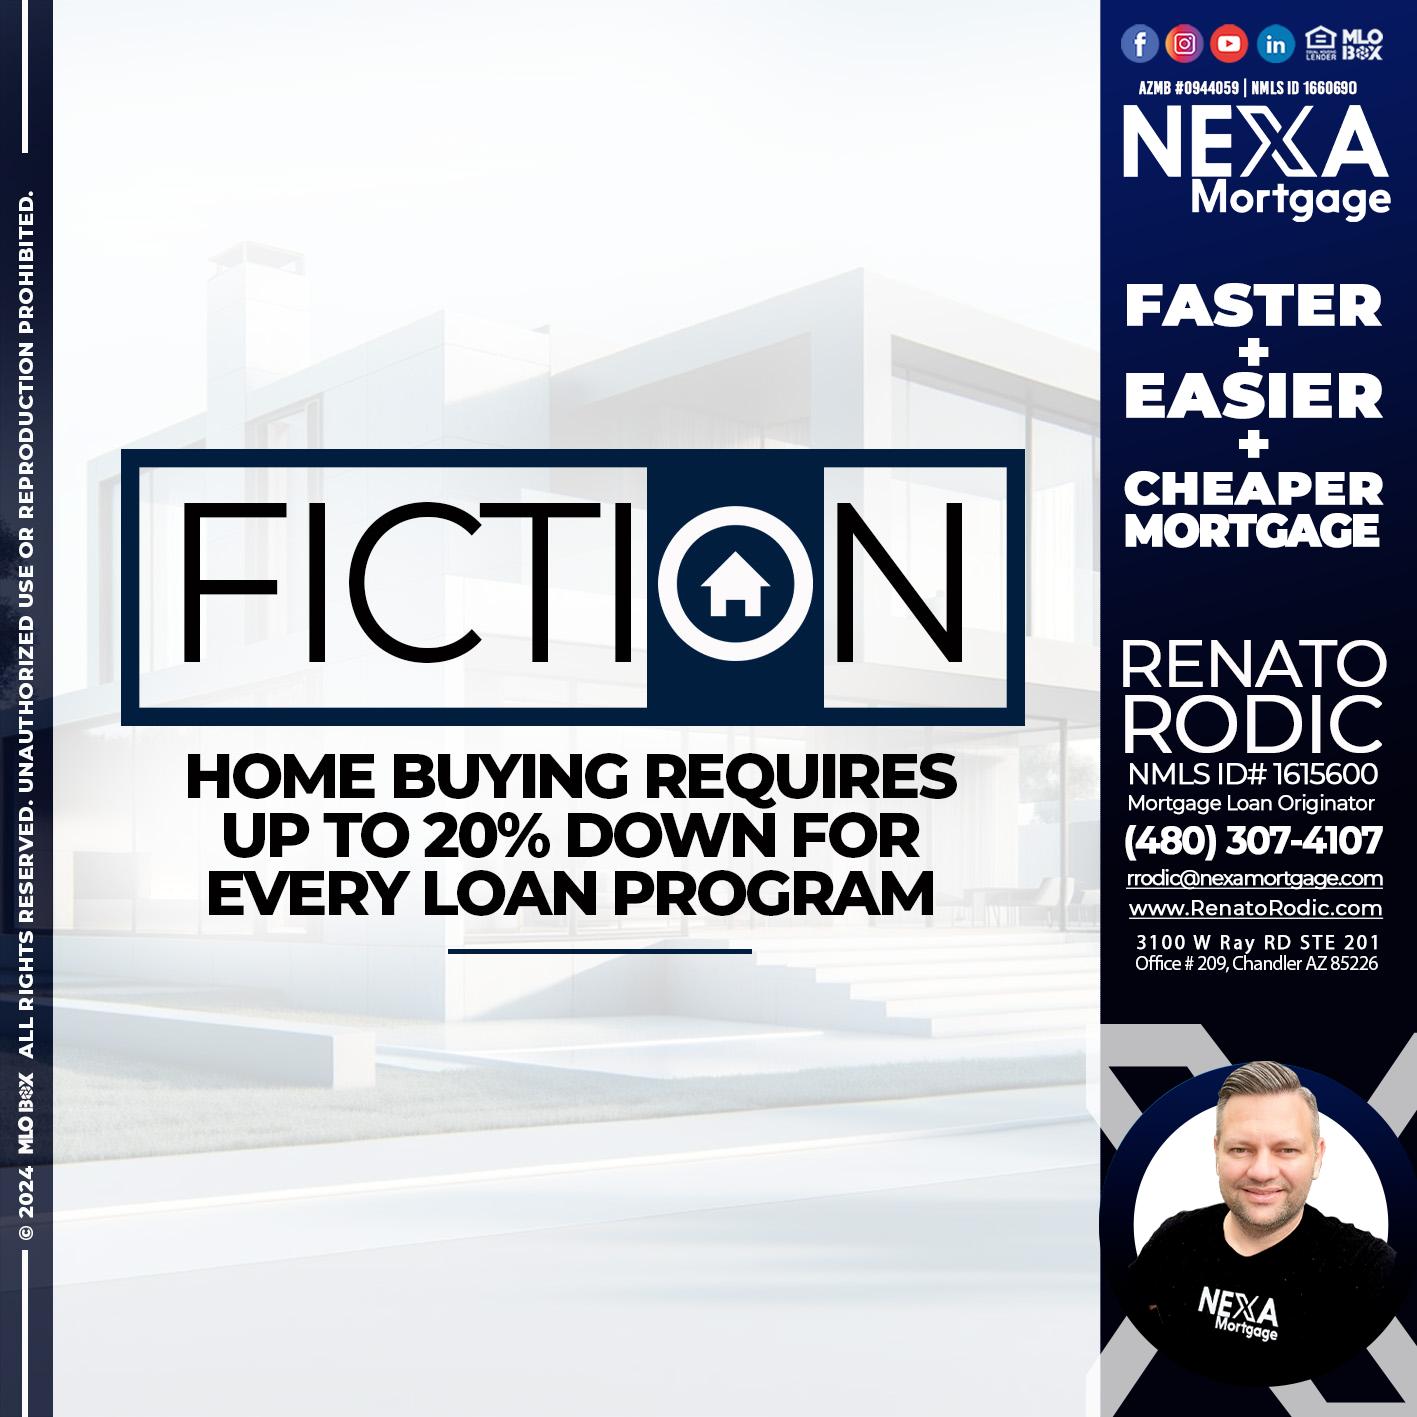 FICTION - Renato Rodic -Mortgage Loan Originator